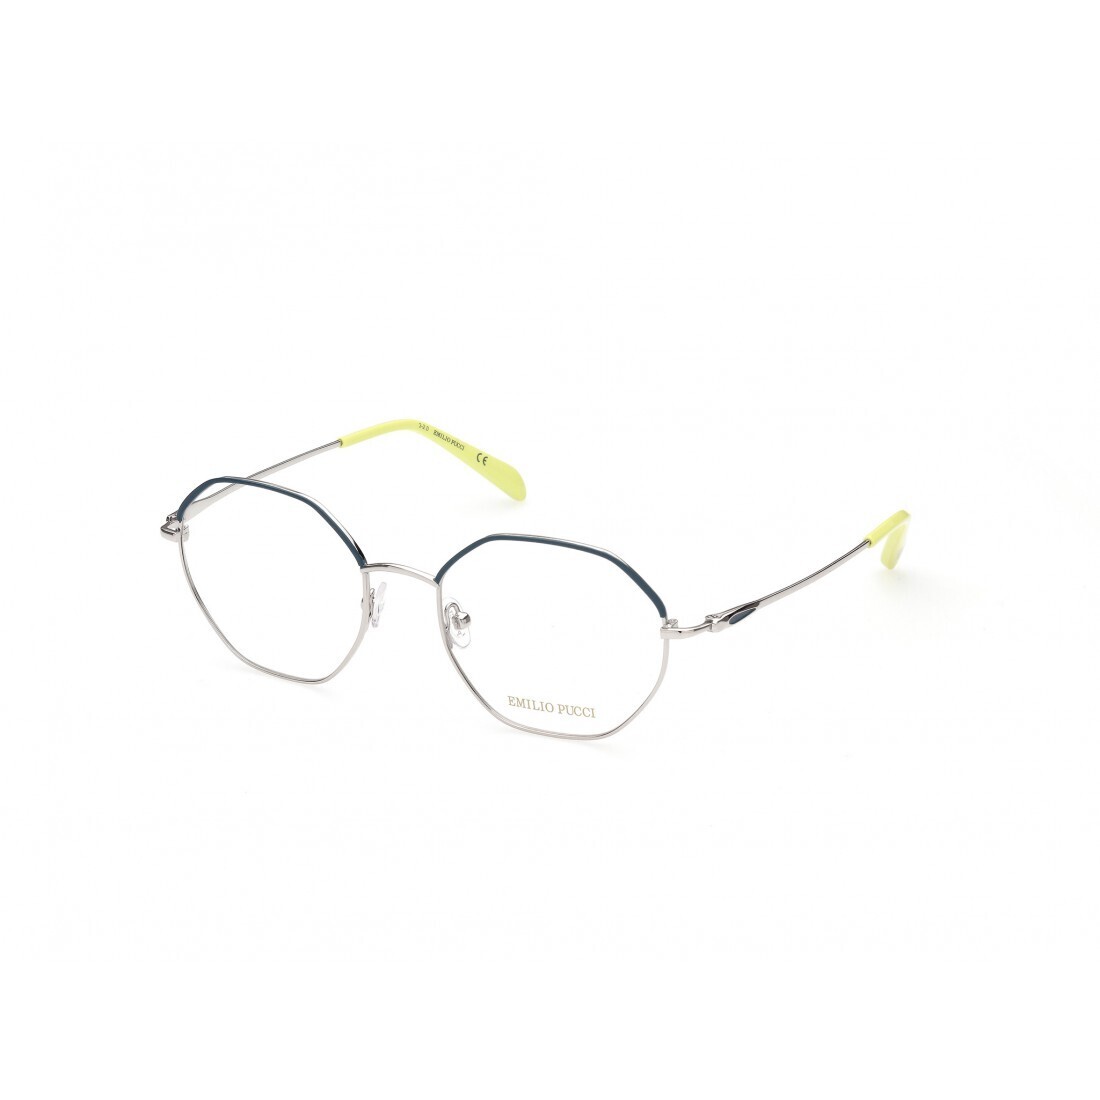 EMILIO PUCCI 5169/V 016 green e silver occhiali